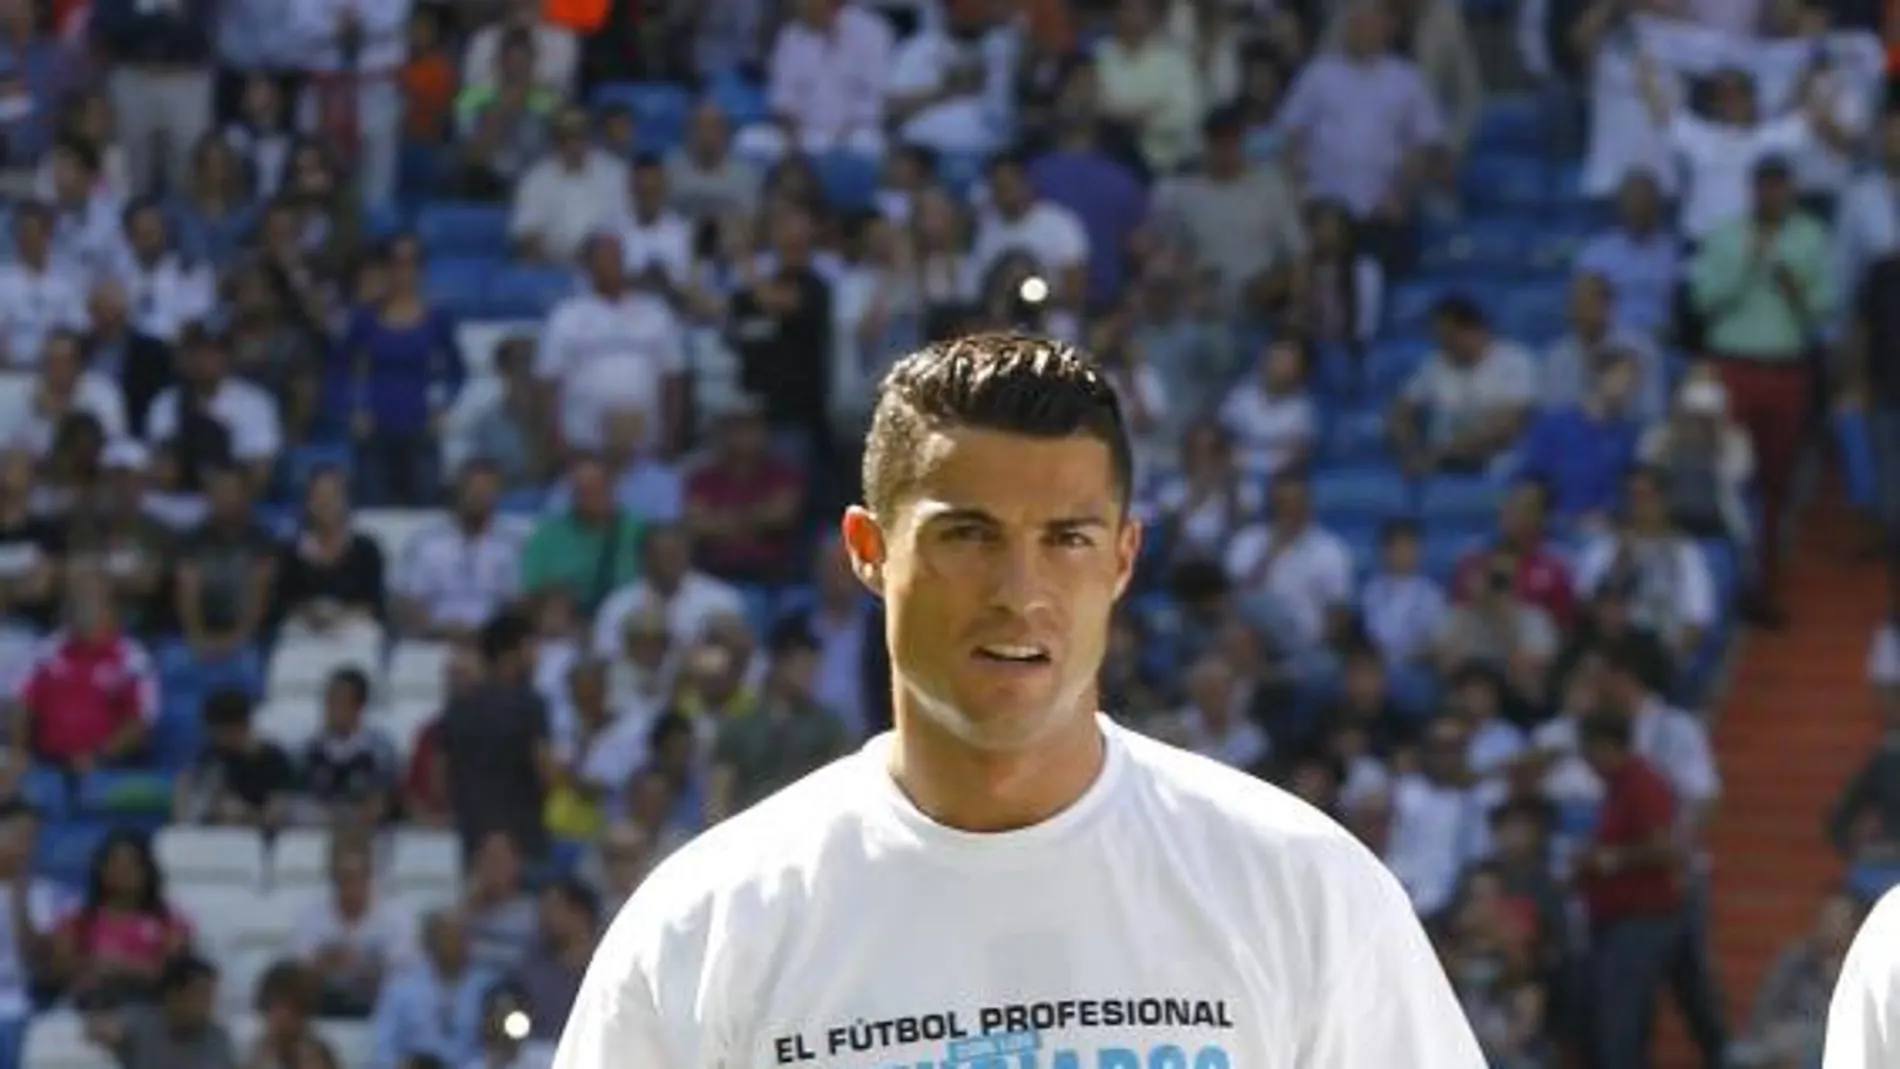 Zaid Abdul en el césped del Santiago Bernabéu vestido con la equipación del Real Madrid junto a Cristiano Ronaldo.